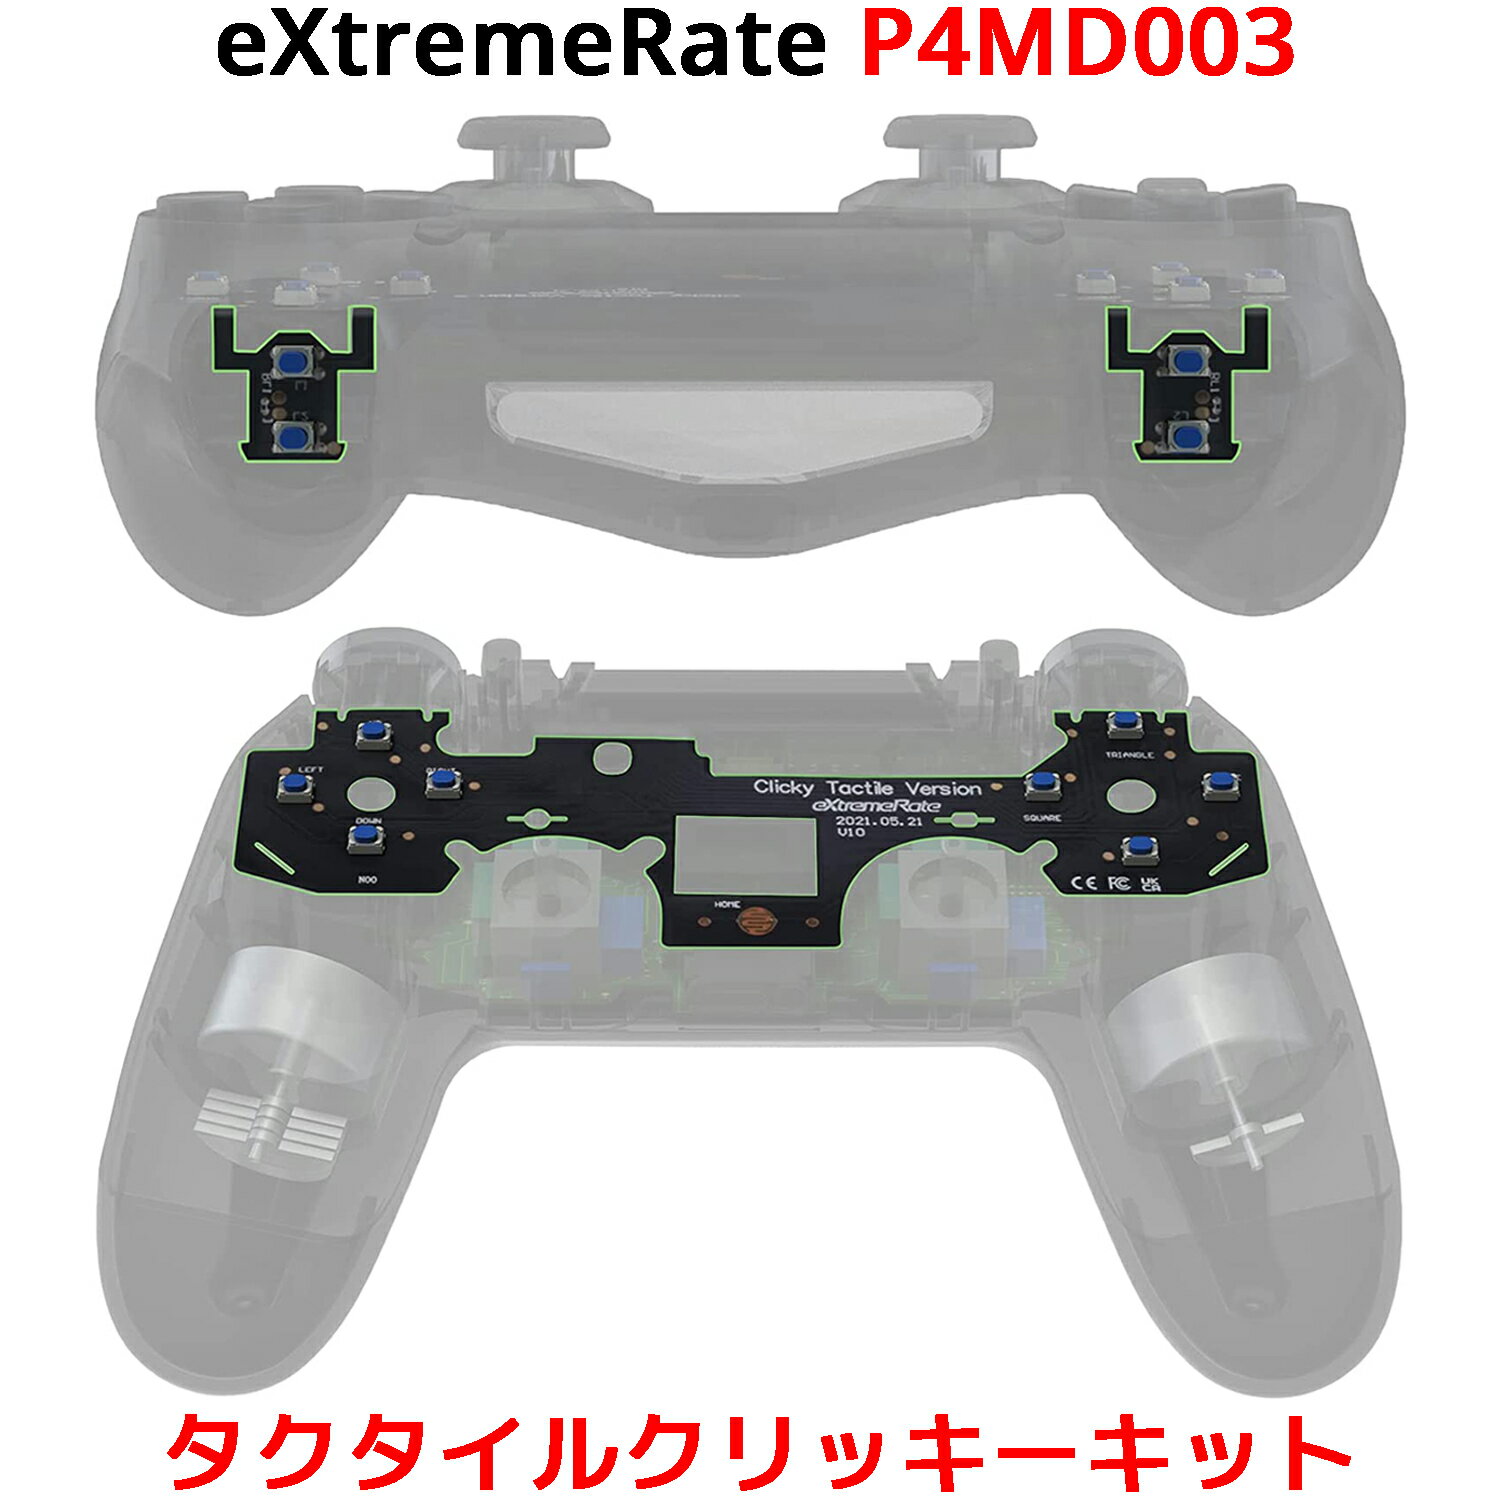 PlayStation 4 コントローラー eXtremeRate タクタイルクリッキーキット PS4コントローラー CUH-ZCT2 JDM-040 JDM-050 JDM-055 対応 カスタムフラッシュショットボタン Dpad 背面ボタン マウスクリックキット エクストリームレート P4MD003 Dパッド L1 L2 R1 R2 ショルダーフェイス ボタン FPS